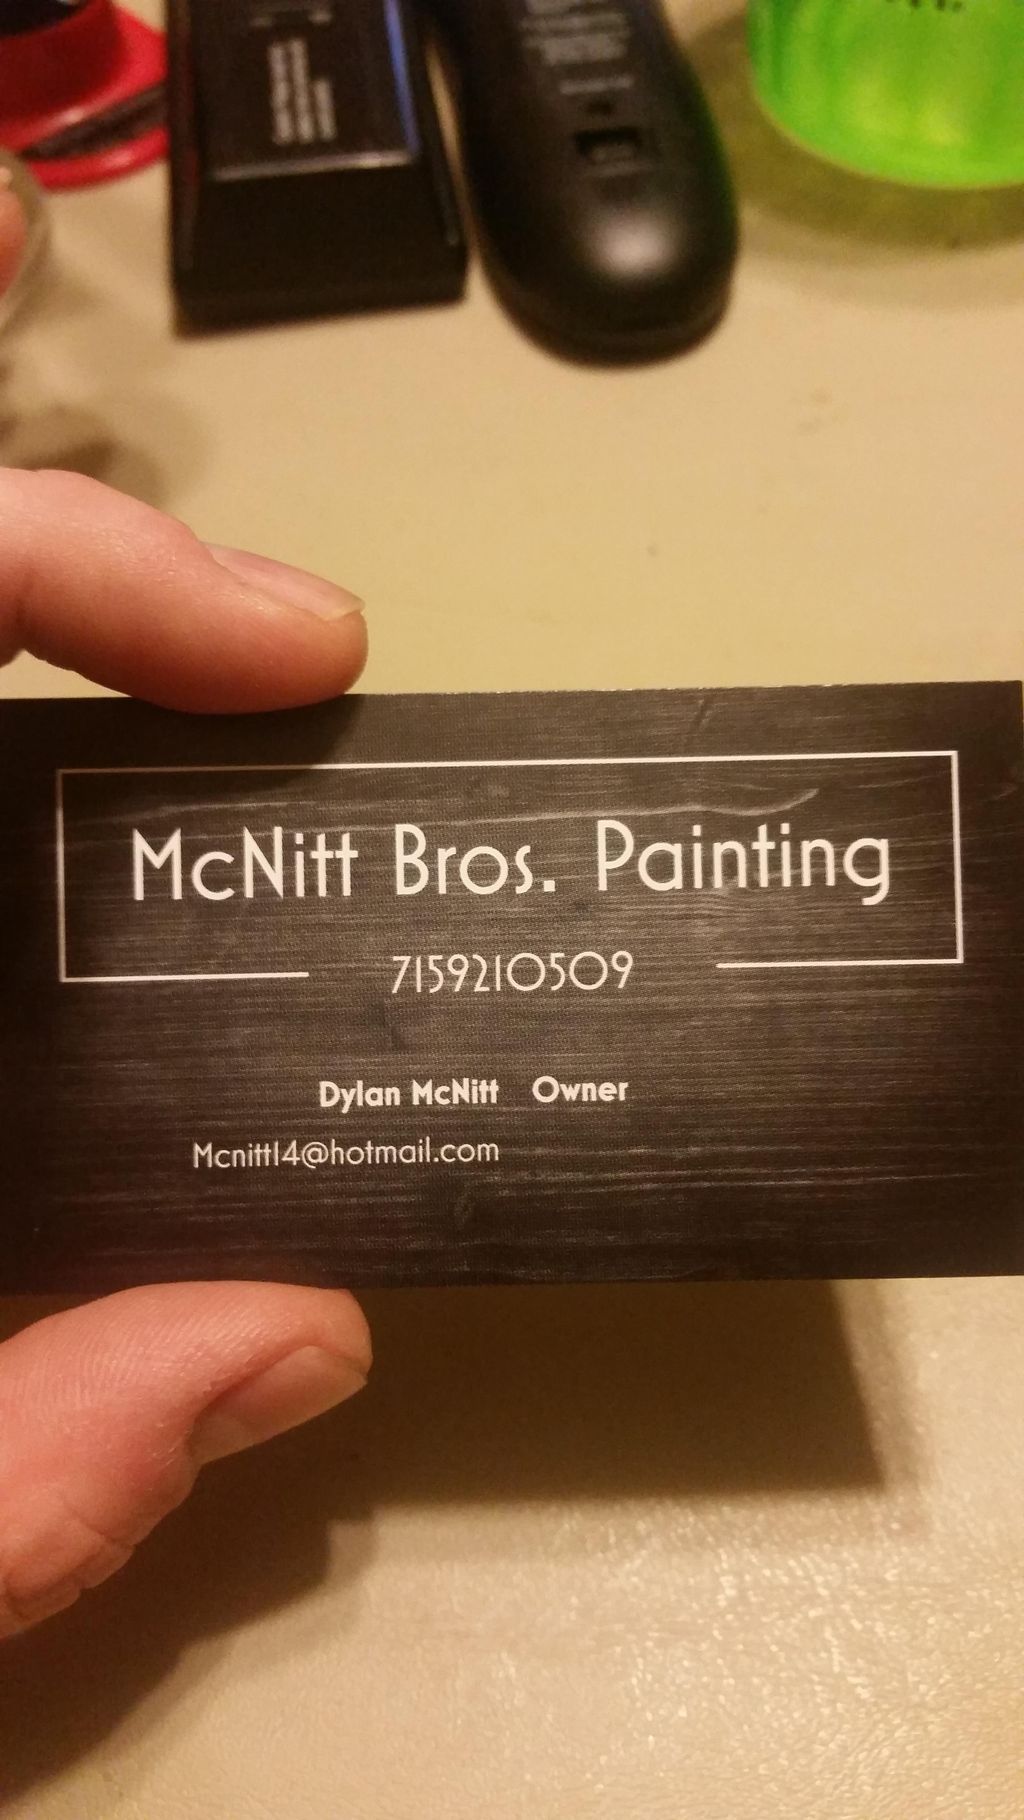 McNitt Bros. Painting